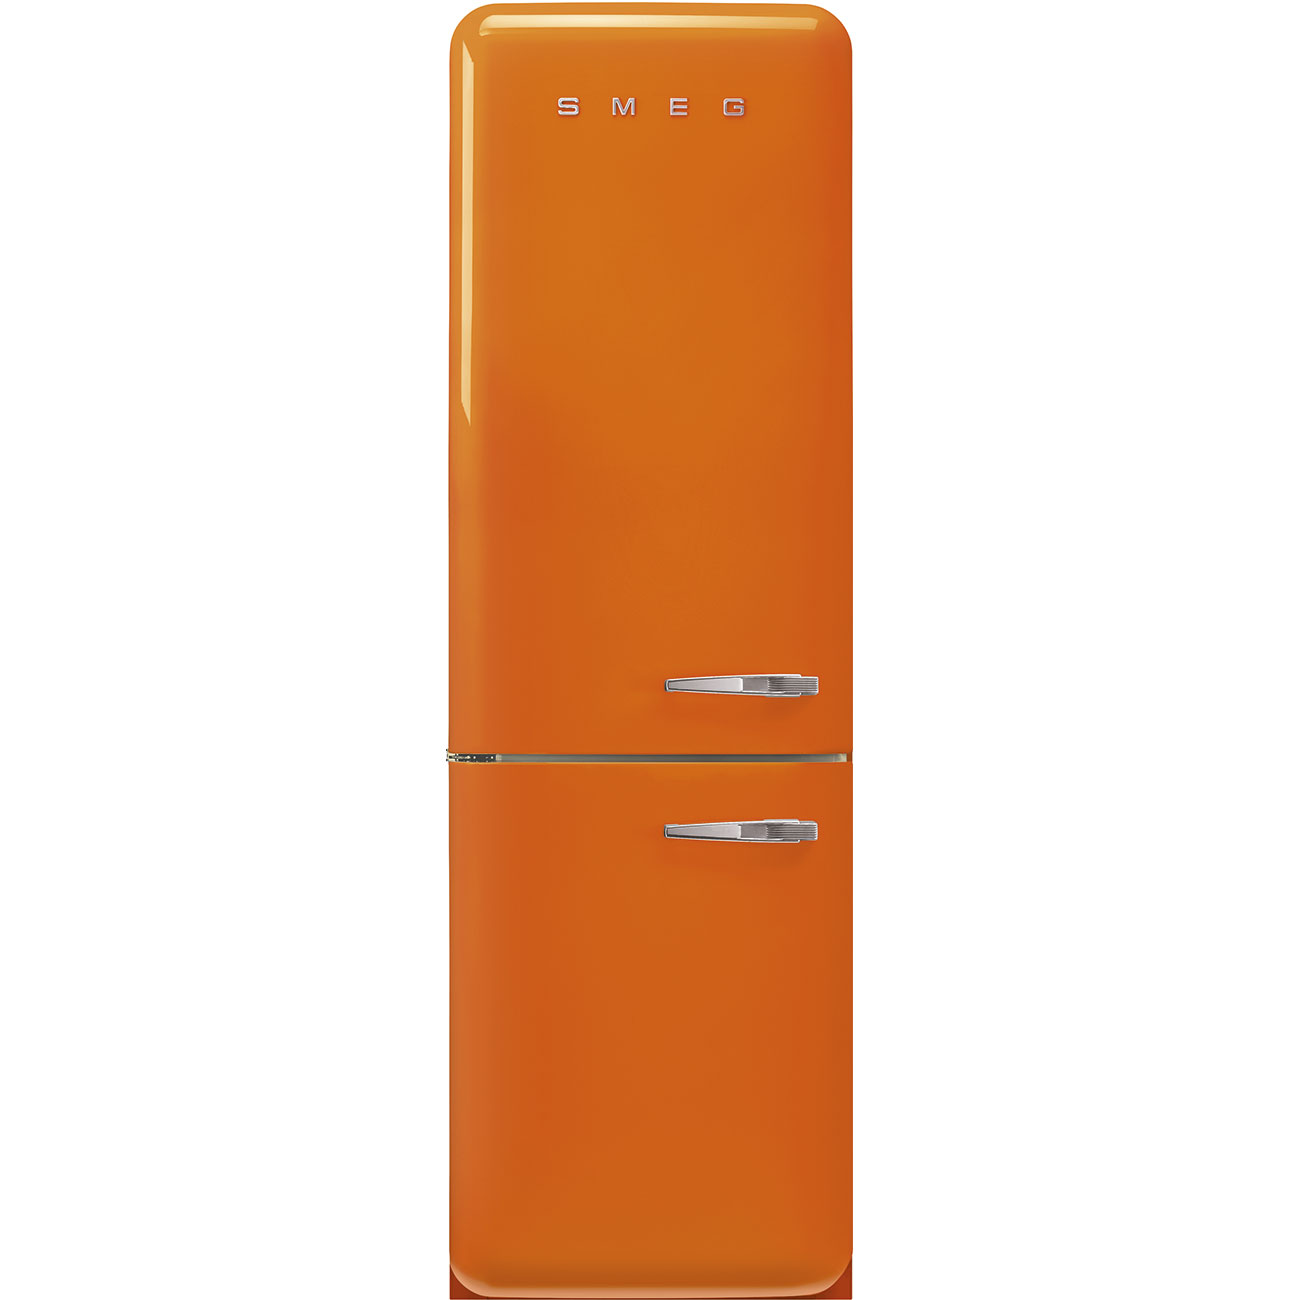 Orange refrigerator - Smeg_1